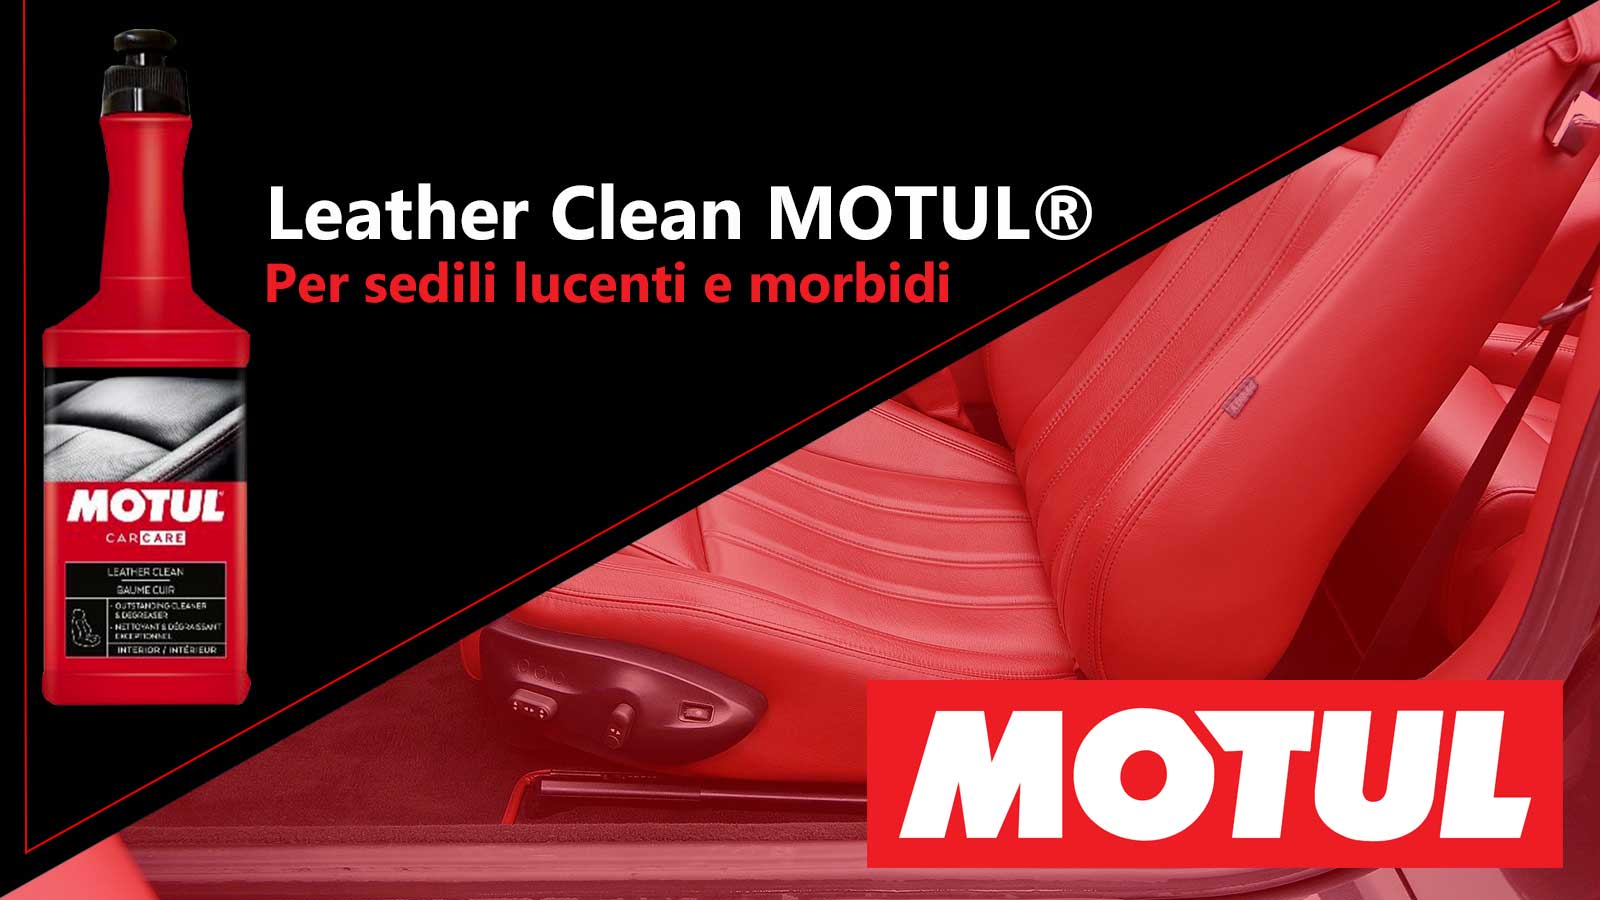 leather-clean-motul-per-sedili-lucenti-e-morbidi